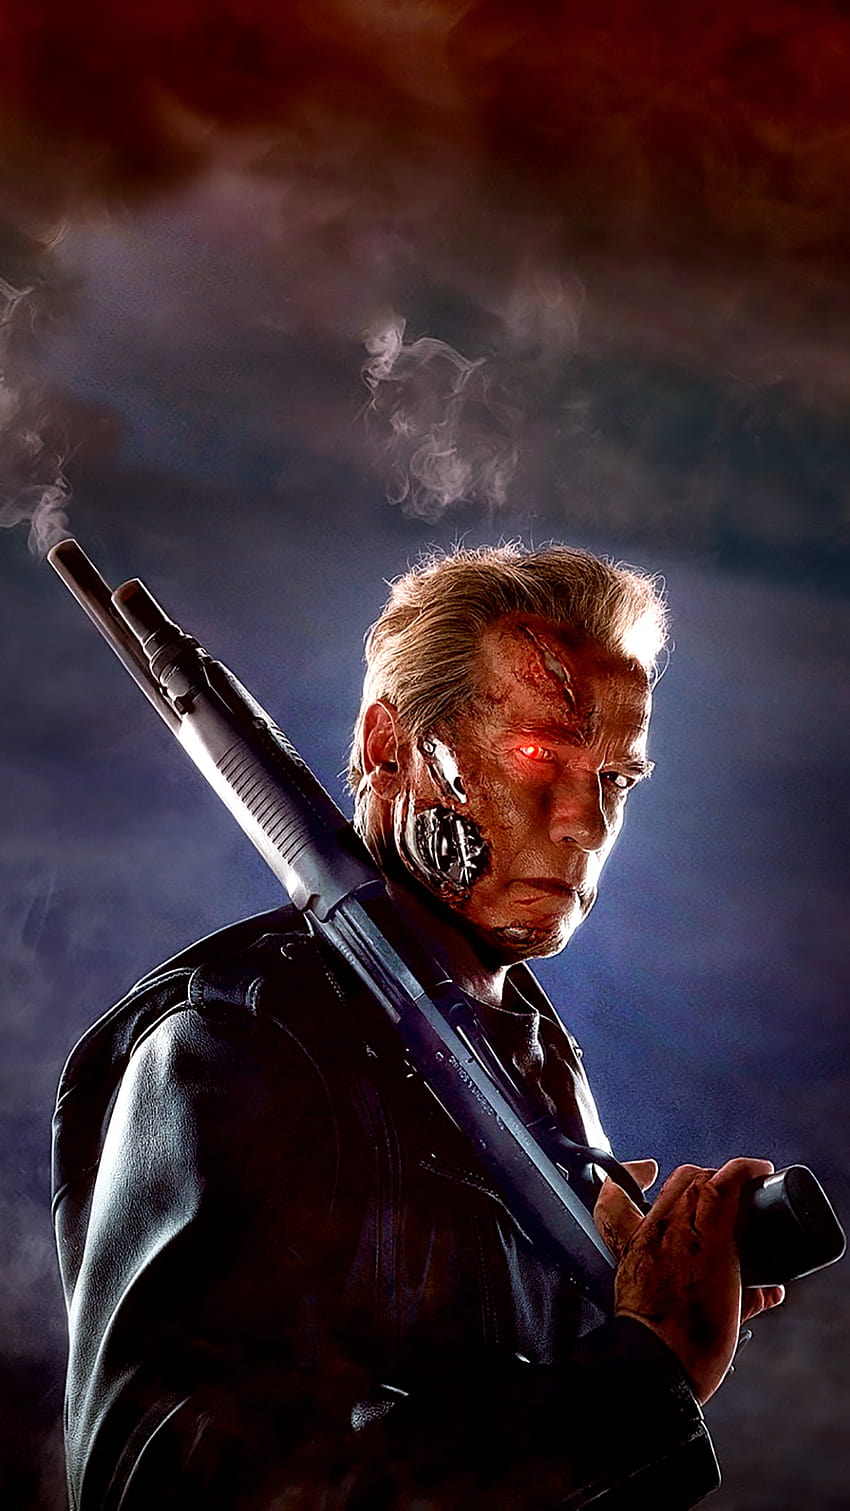 ↑↑¡TOCA Y OBTÉN LA APLICACIÓN! Lockscreens Arte Creativo Terminator, terminator genisys iphone fondo de pantalla del teléfono